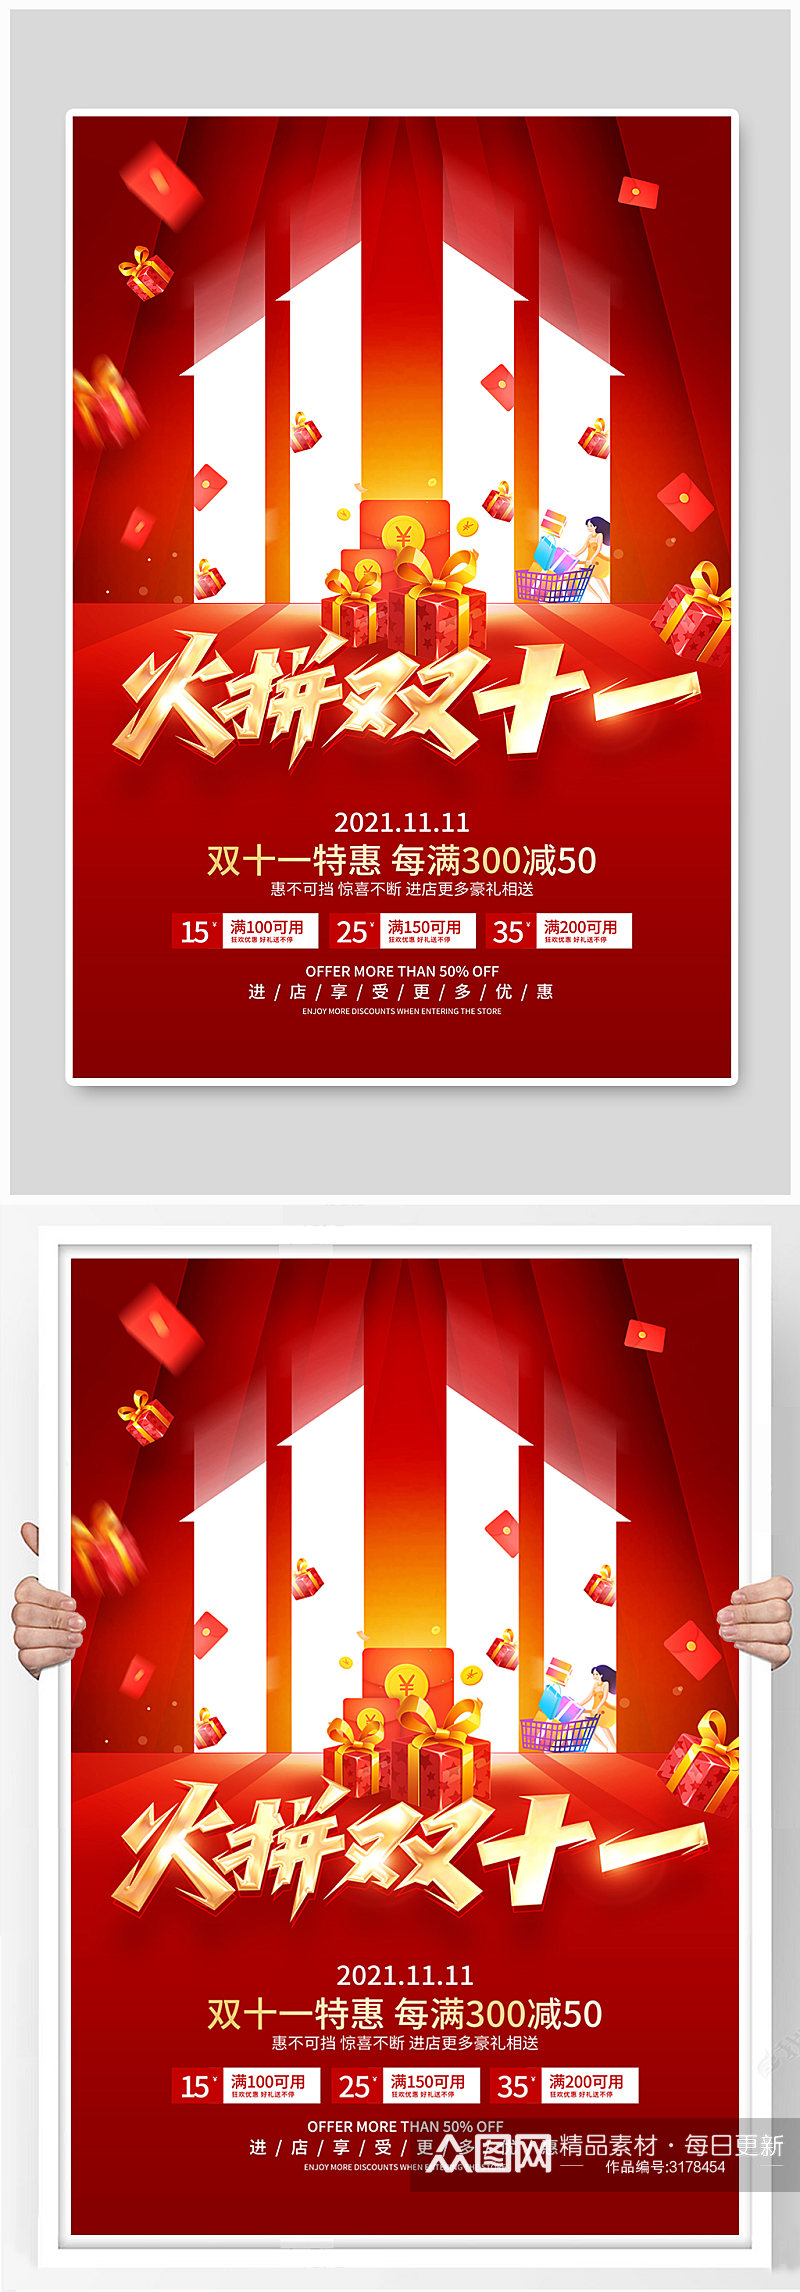 红色简约风格双11促销活动海报素材